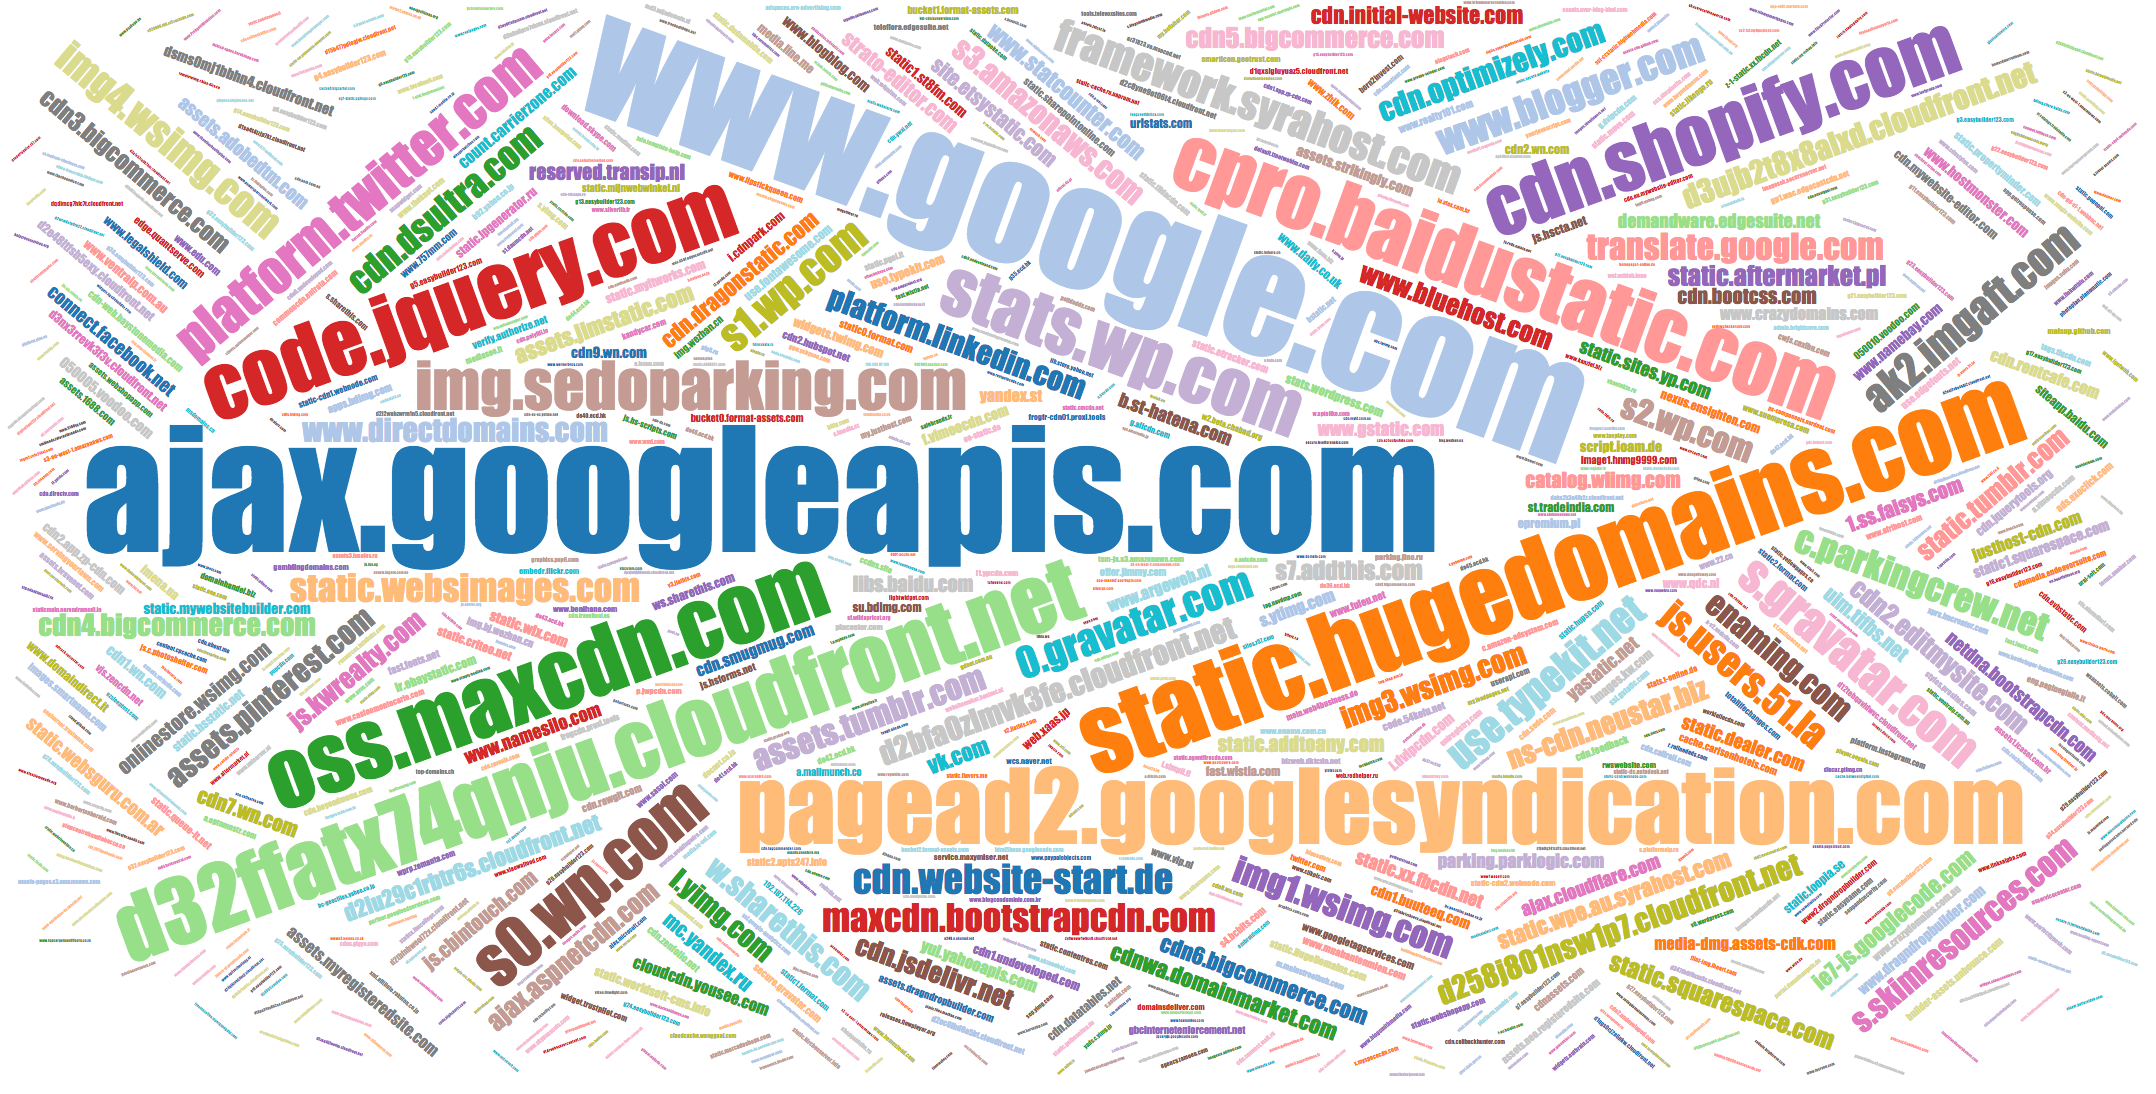 Popular names of JS domains qtaaabbbzy1.mydcfe.com, qtppapzy6.mingorge.com, etc.